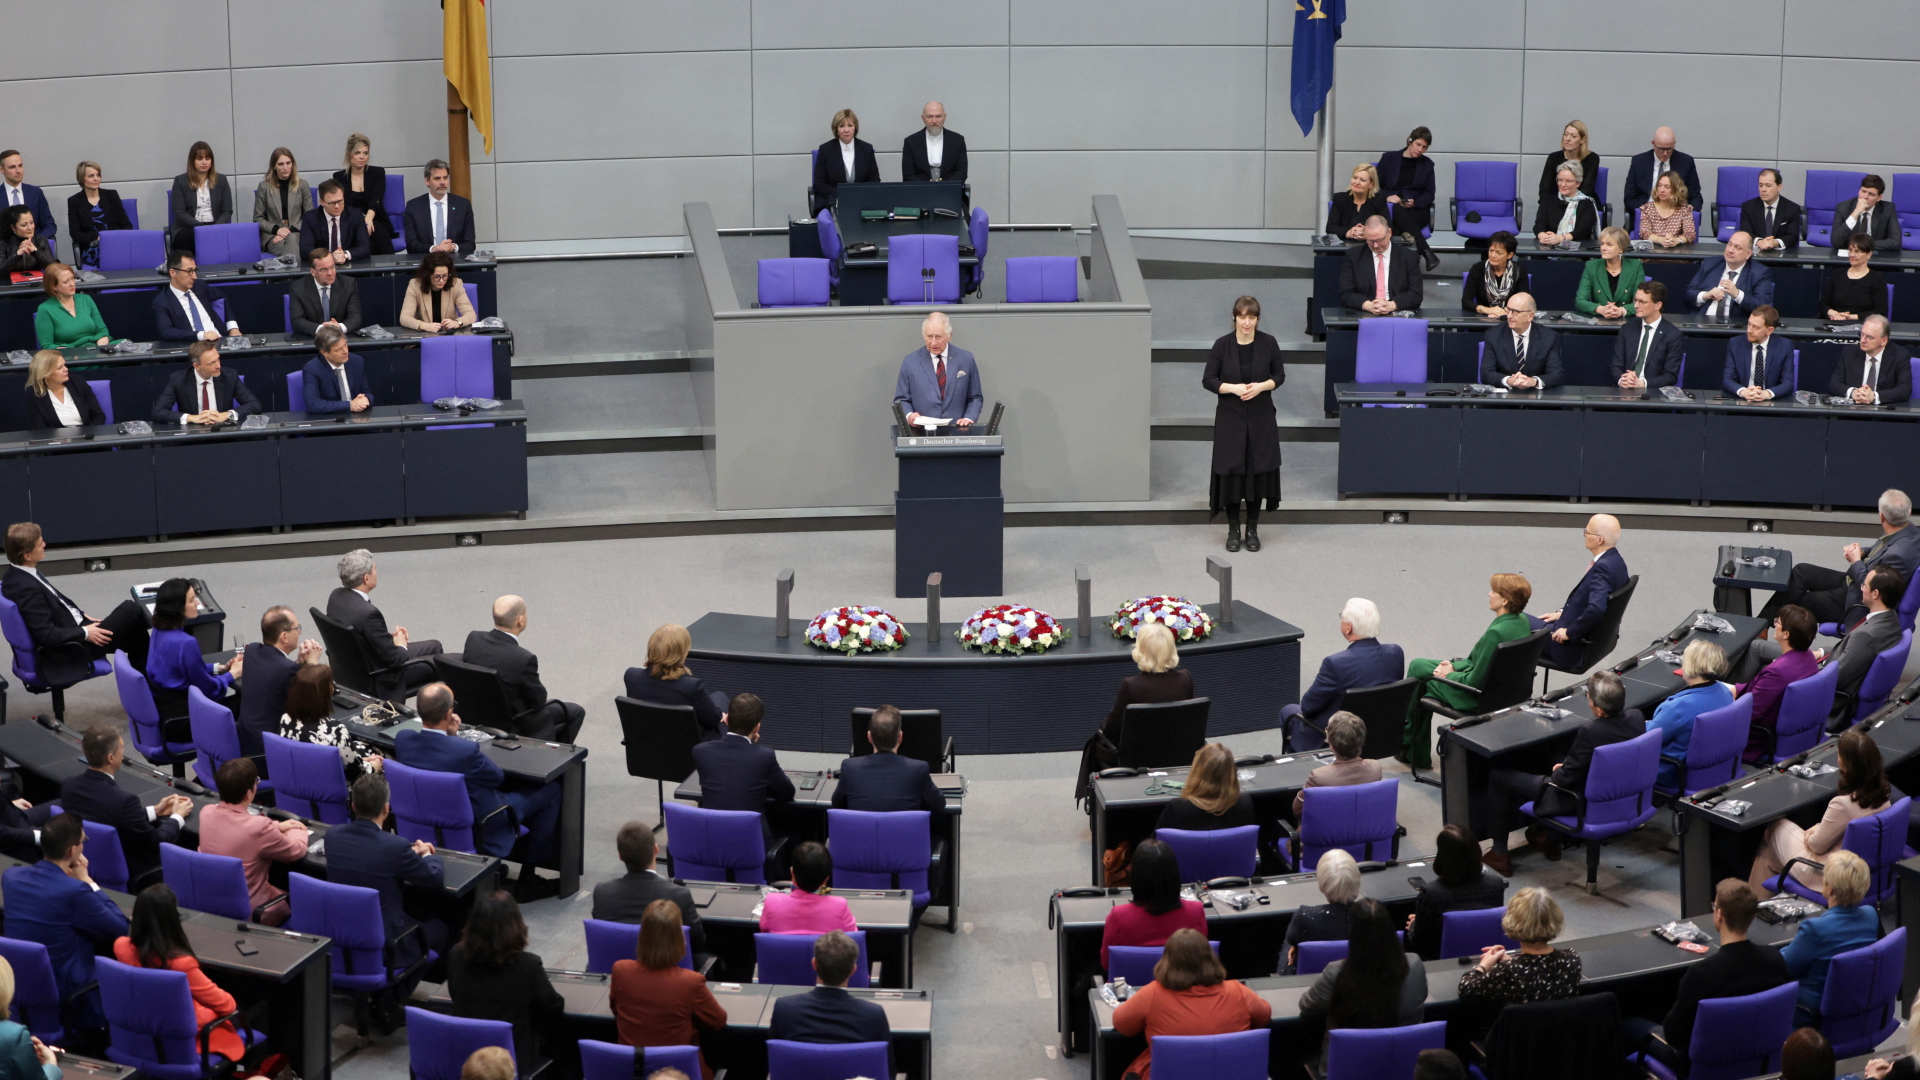 Kommentar zu Charles III. im Bundestag: Alles, außer gewöhnlich